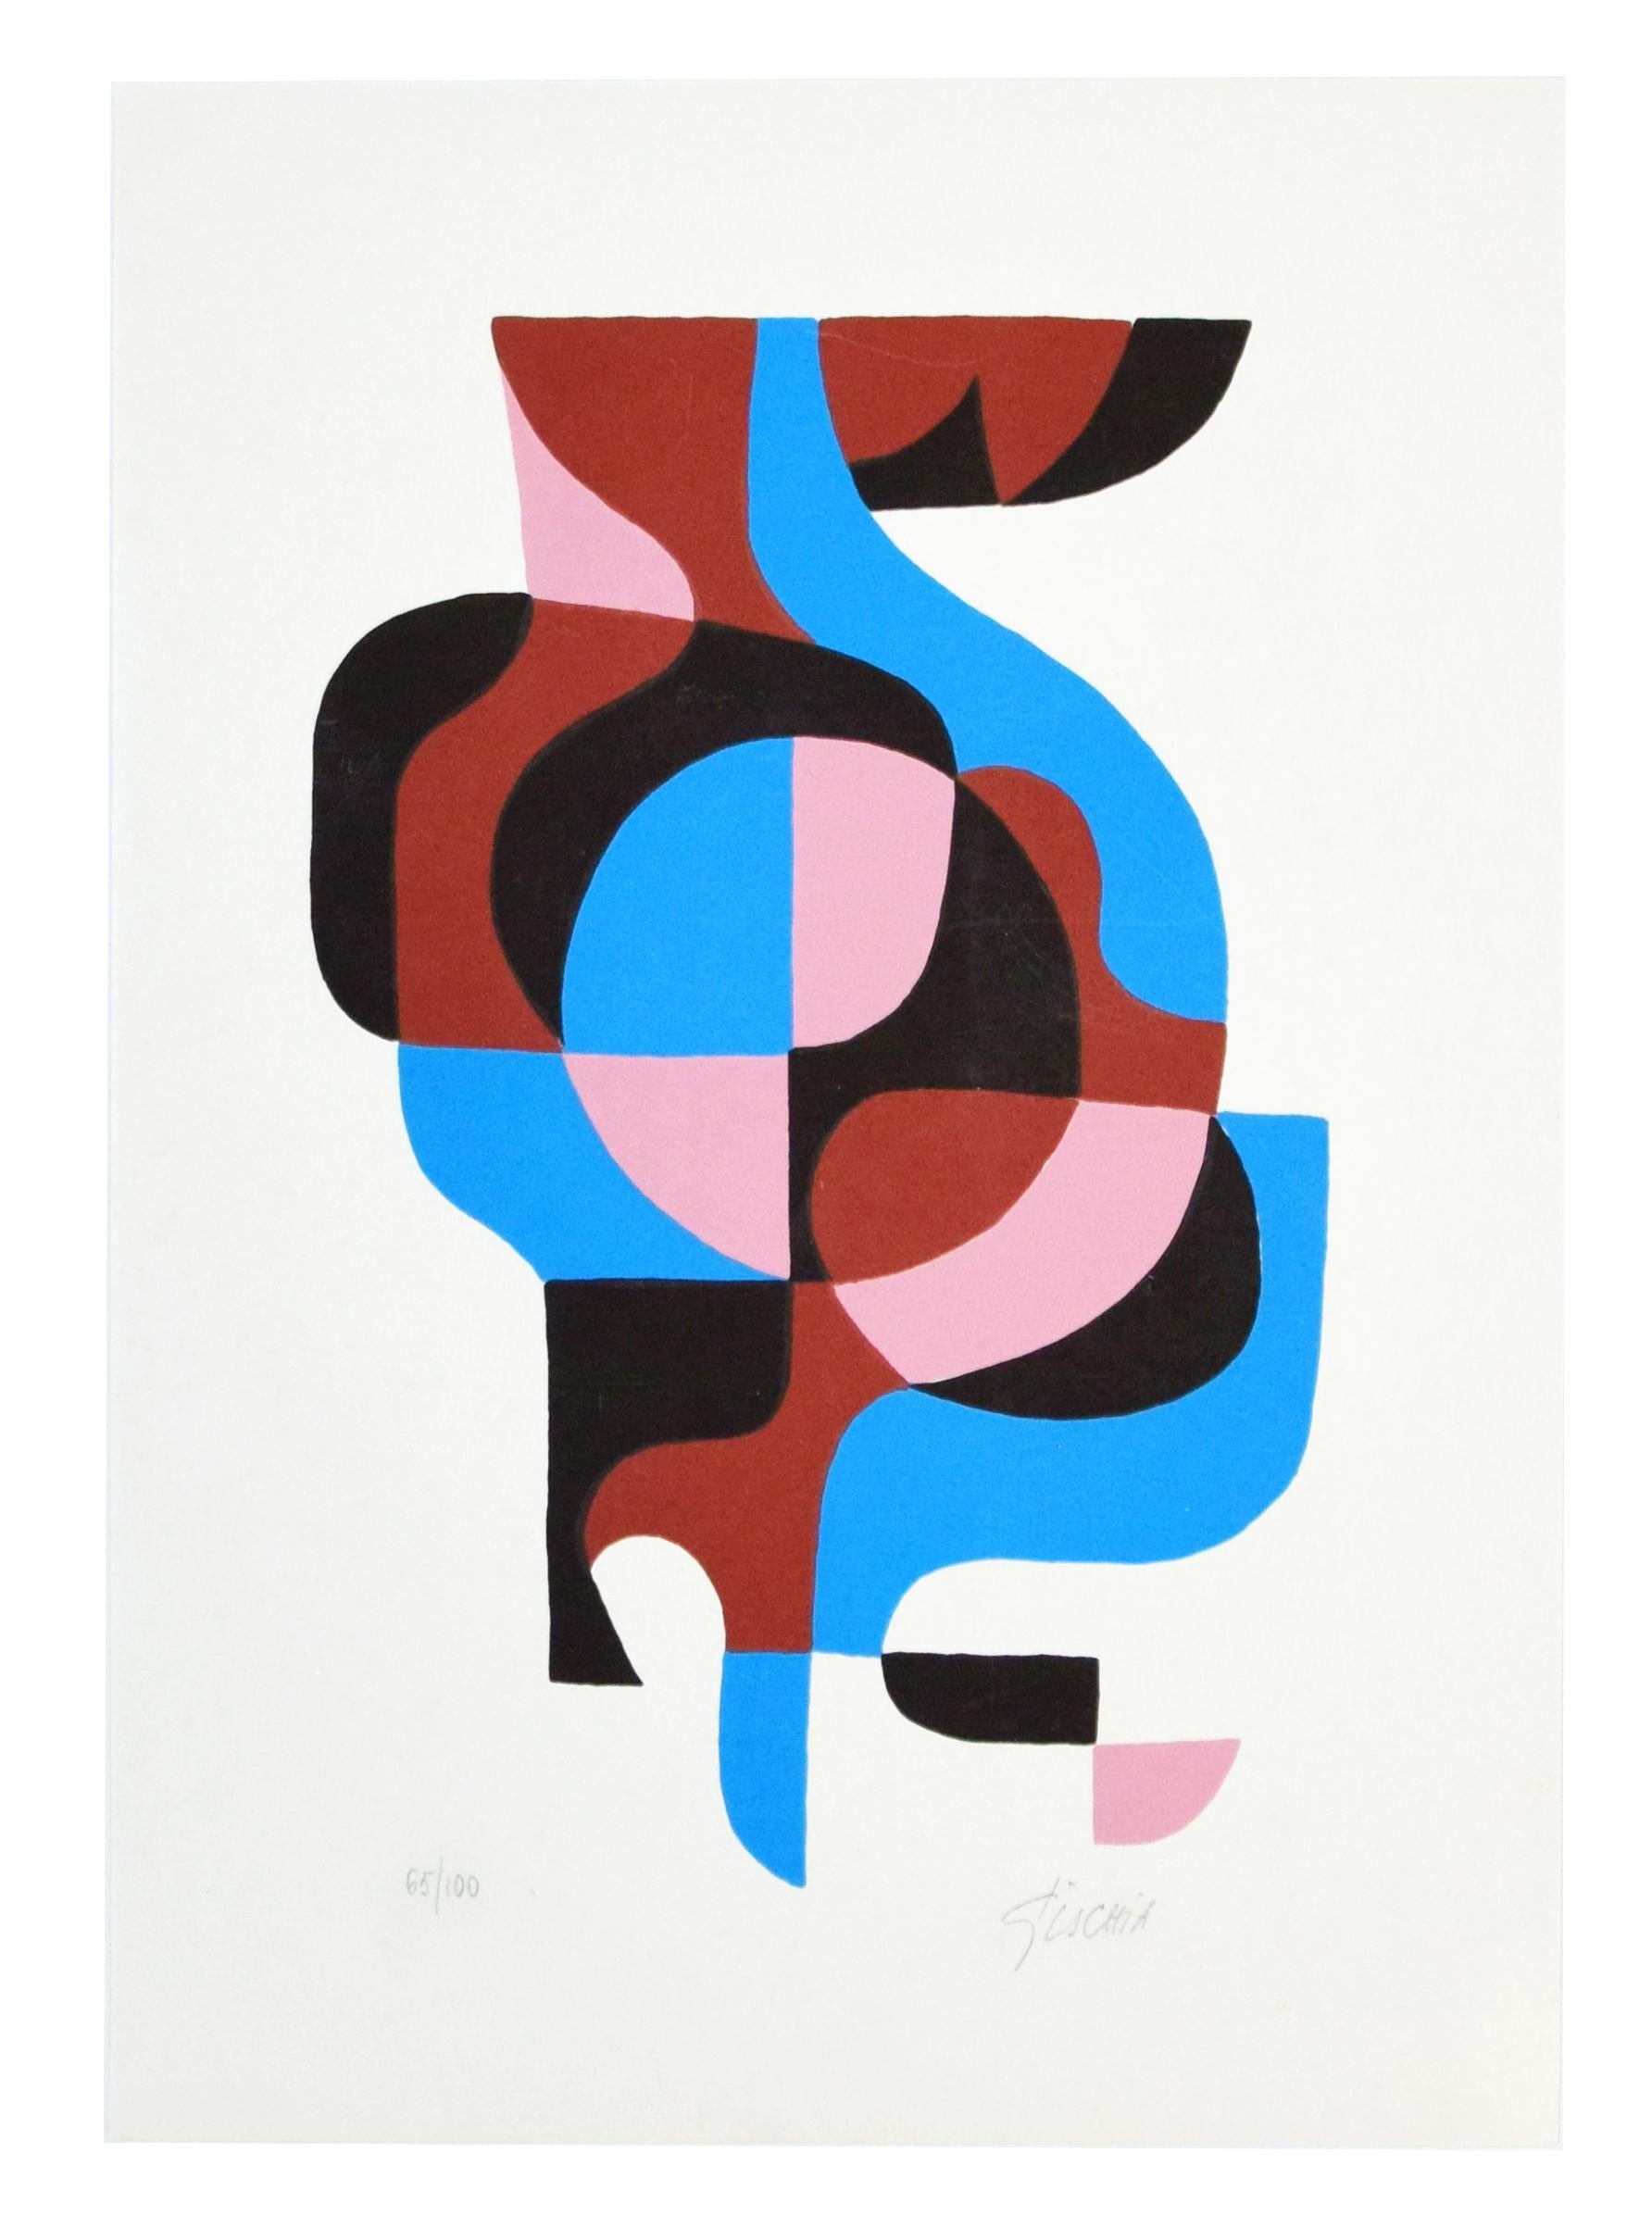 Composition abstraite est une sérigraphie originale colorée réalisée par Léon Gischia au cours du XXème siècle.

Signé à la main au crayon en bas à droite. Numéroté au crayon en bas à gauche. Édition 65/100. Comprend un passepartout (70 x 50